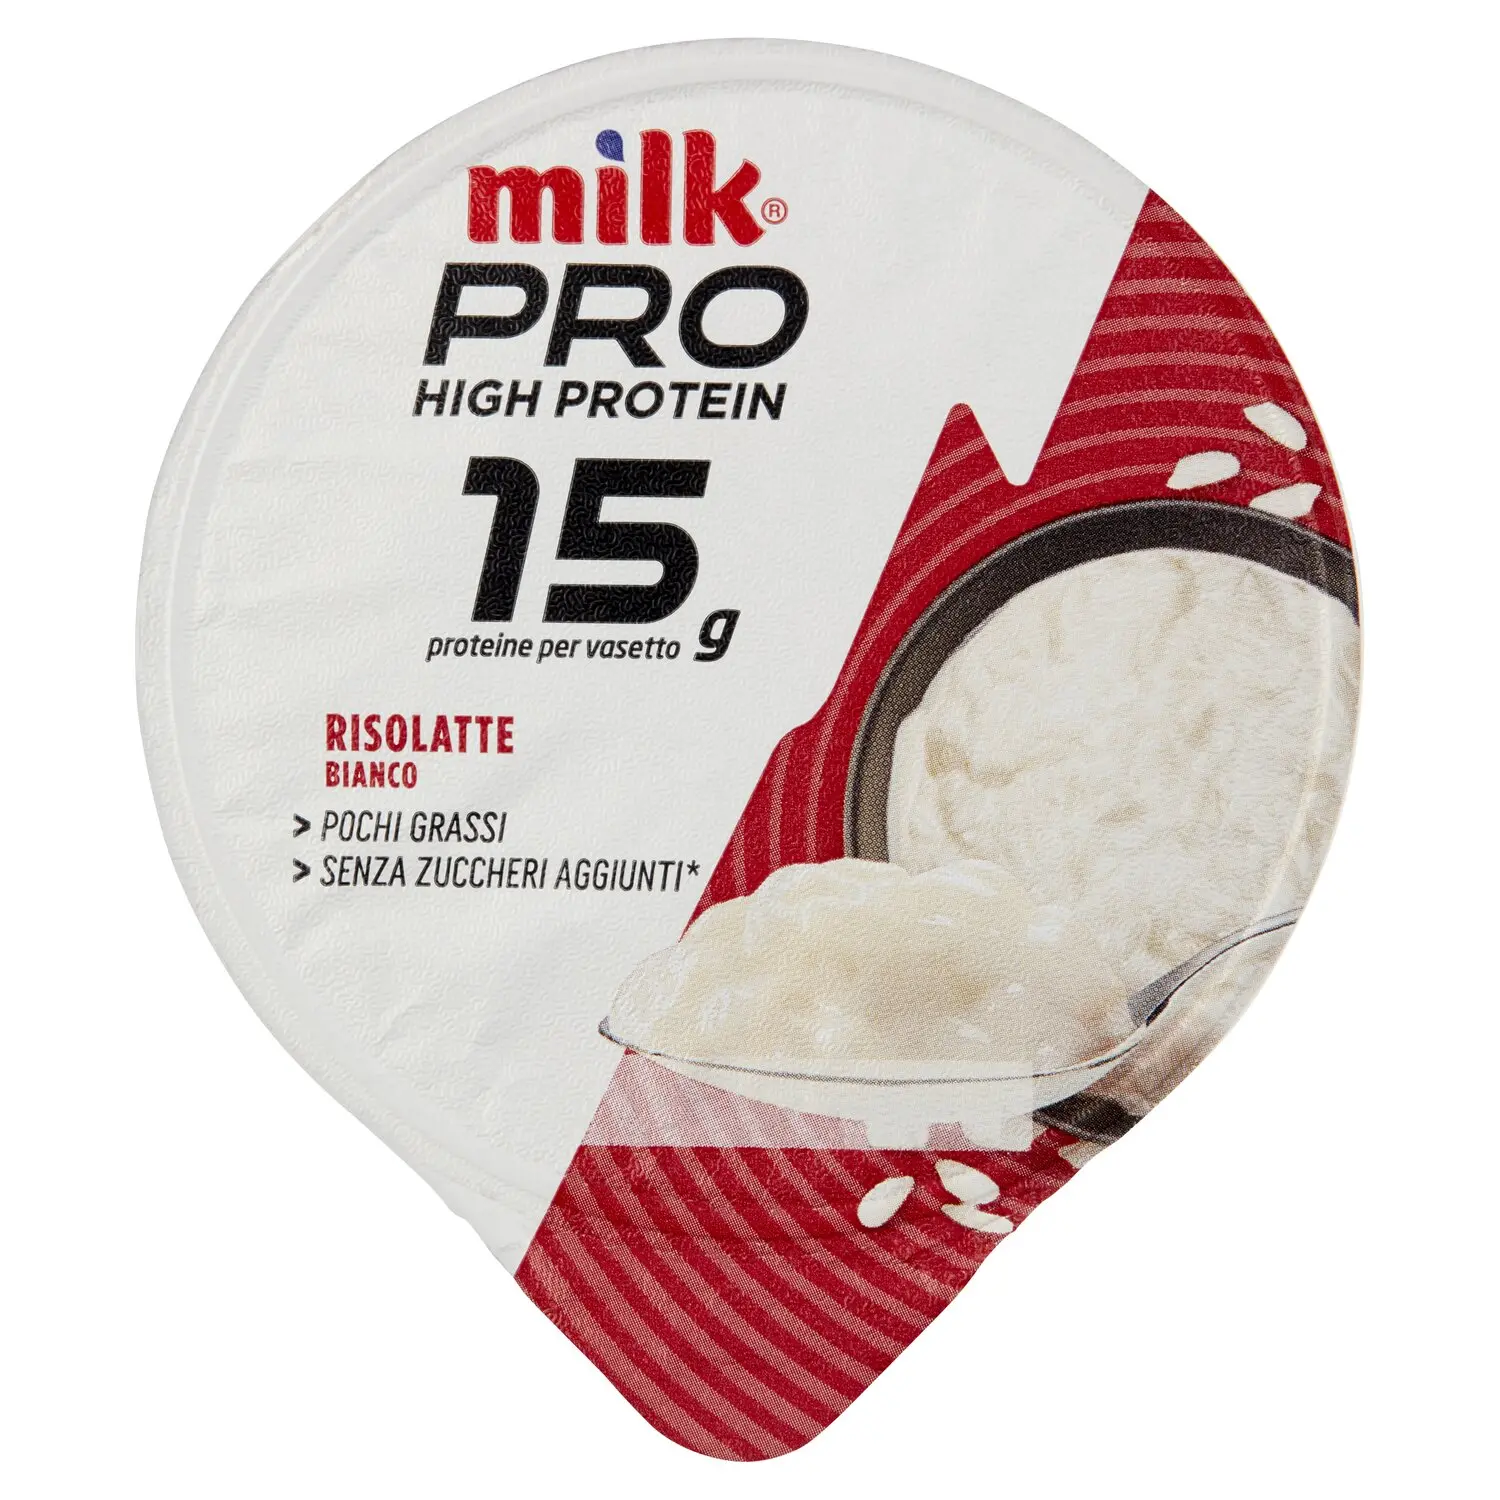 milk Pro High Protein 15g Risolatte Bianco 160 g